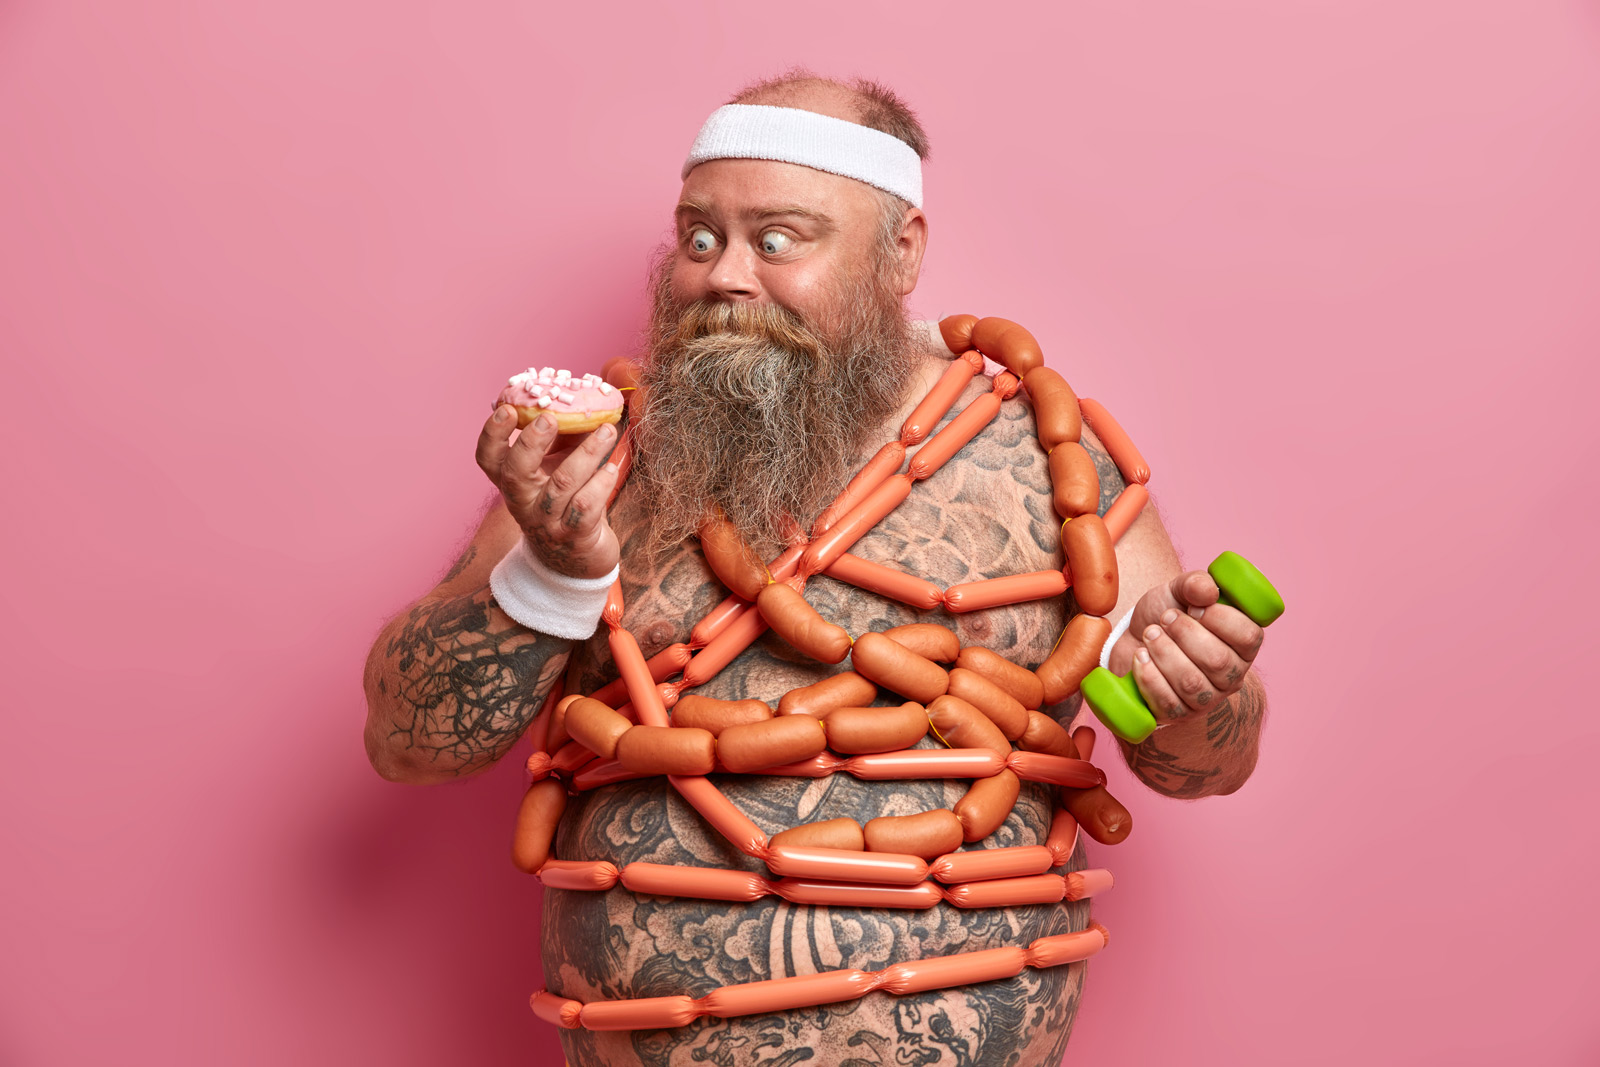 Ein korpulenter Mann mit einer Wurst-Kette um den Hals, in der linken Hand hält er eine Hantel, in der Rechten einen Donut mit rosa Glasur. Er schaut schmachtend auf den Donut.